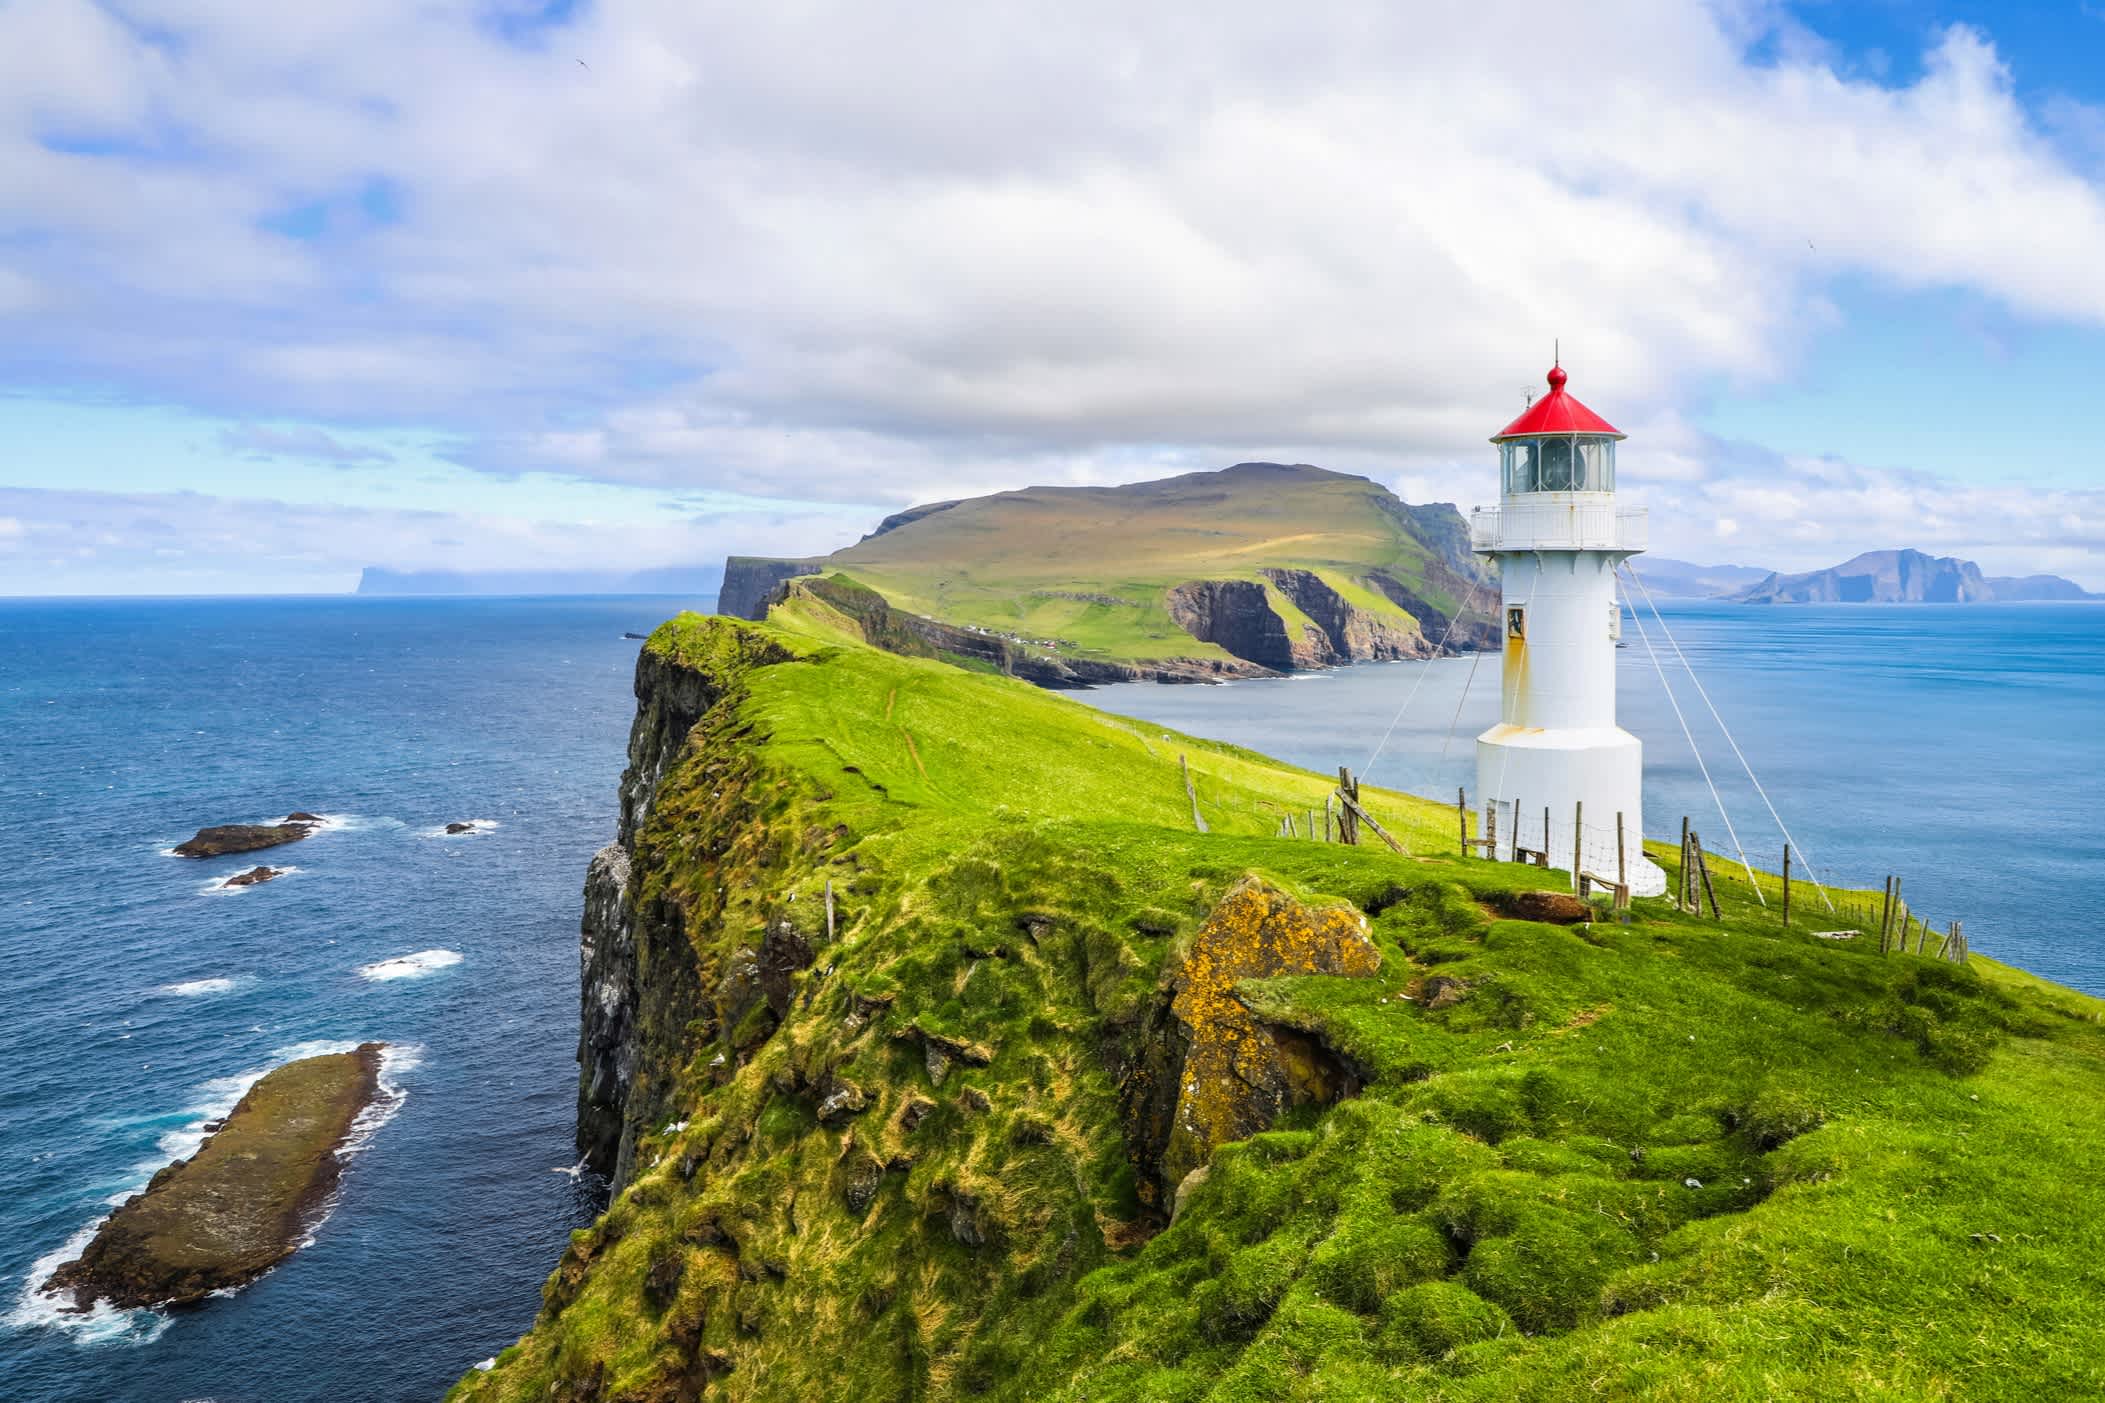 Vue sur un phare et un paysage de collines verdoyantes avec la mer en arrière-plan